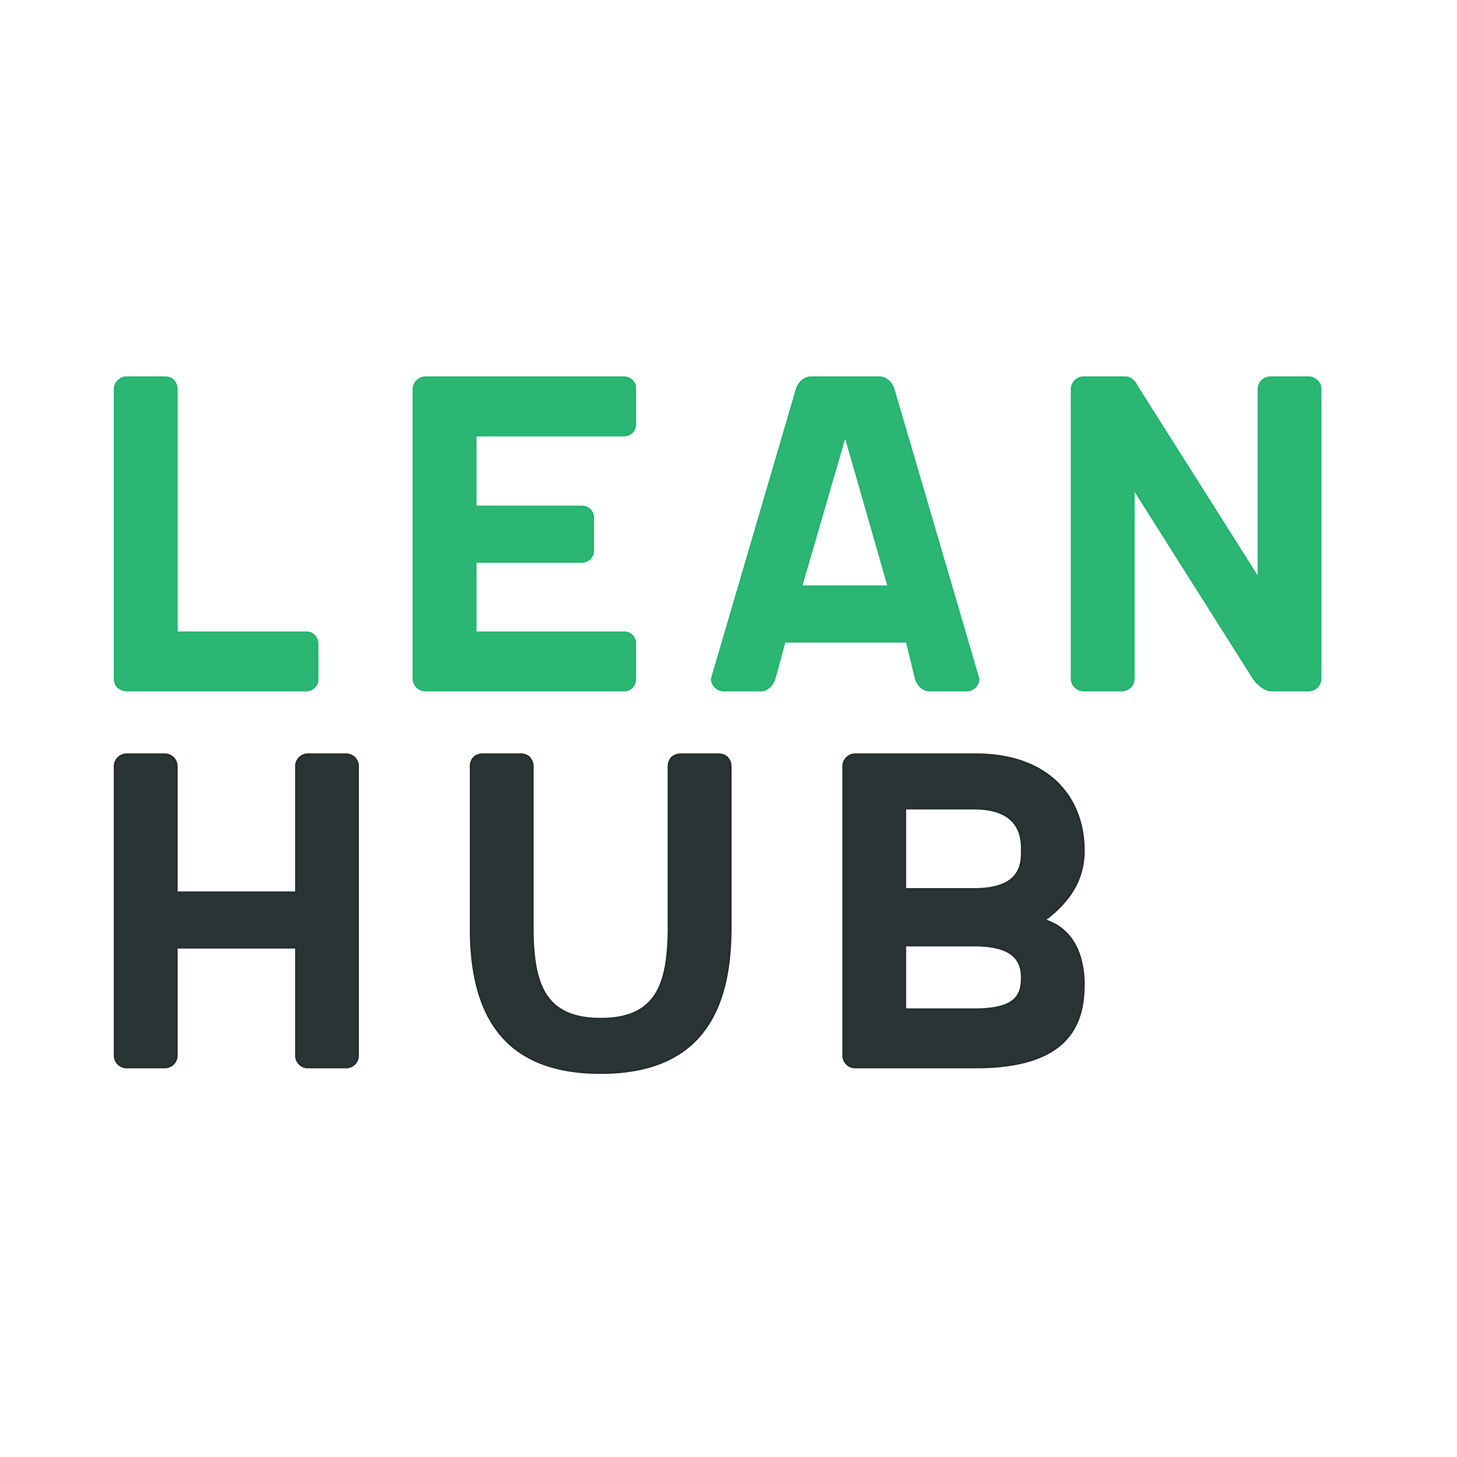 The Lean Hub